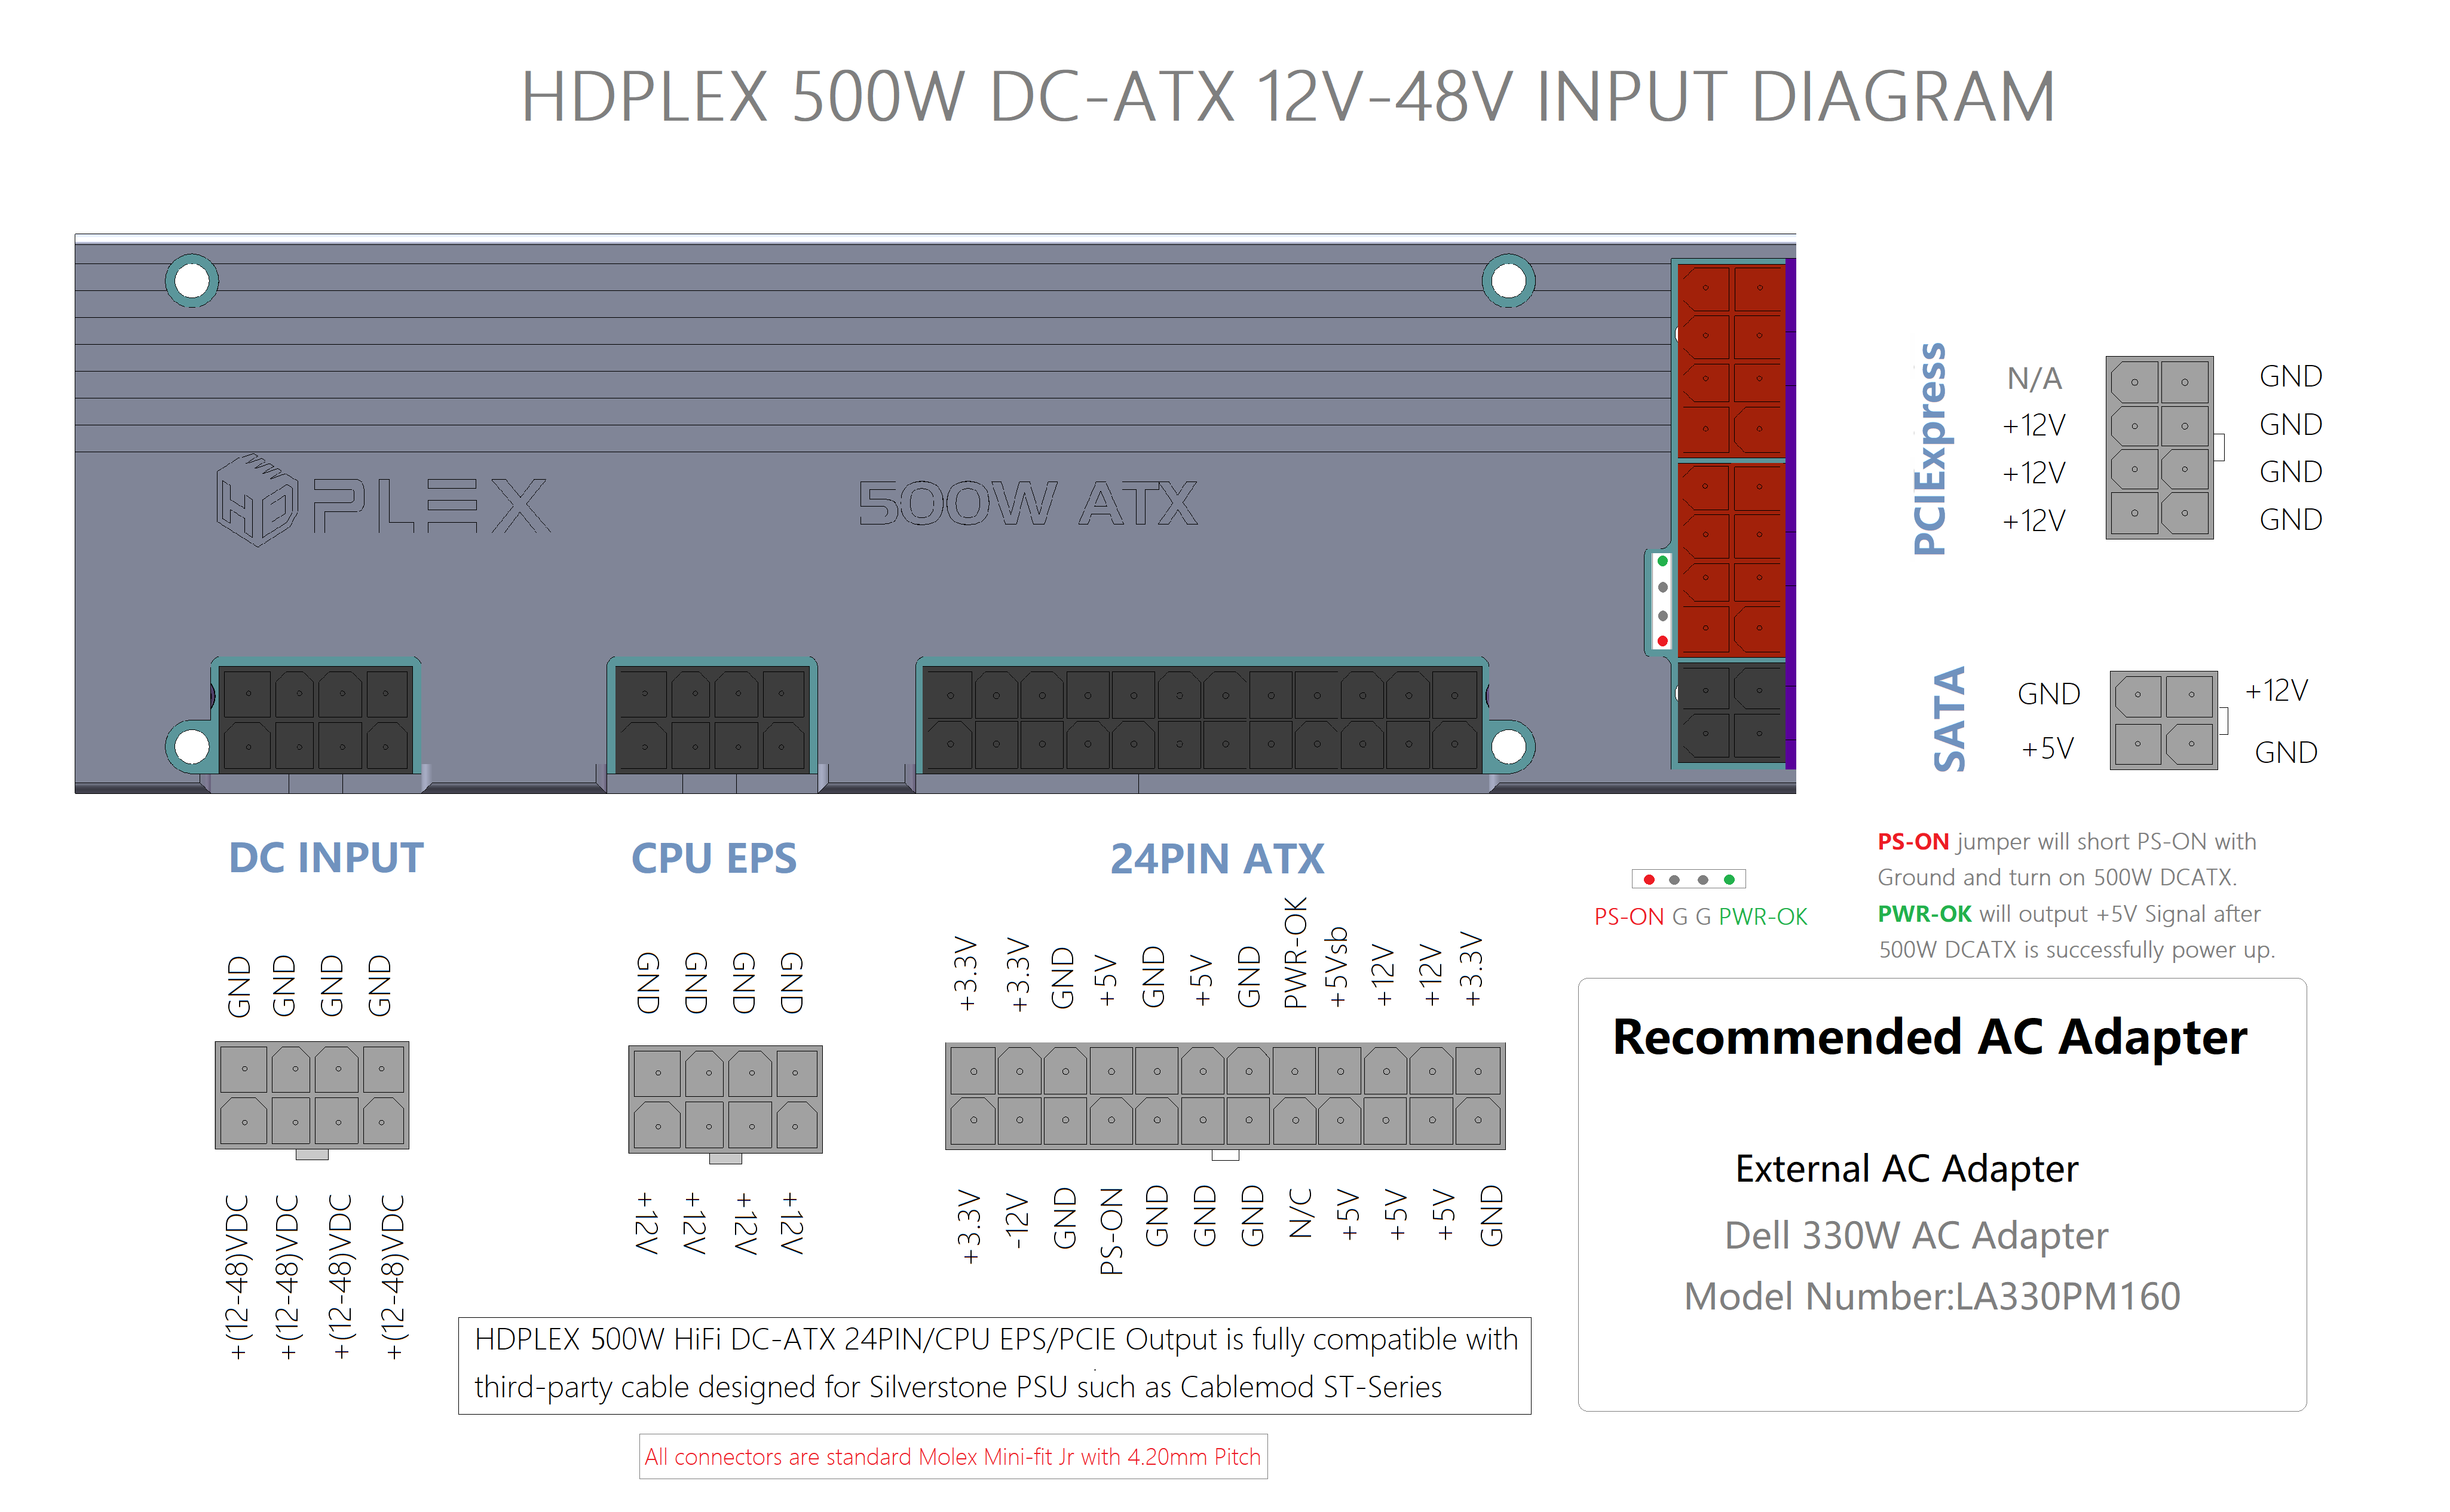 HDPLEX 500W Hi-Fi DC-ATX Converter